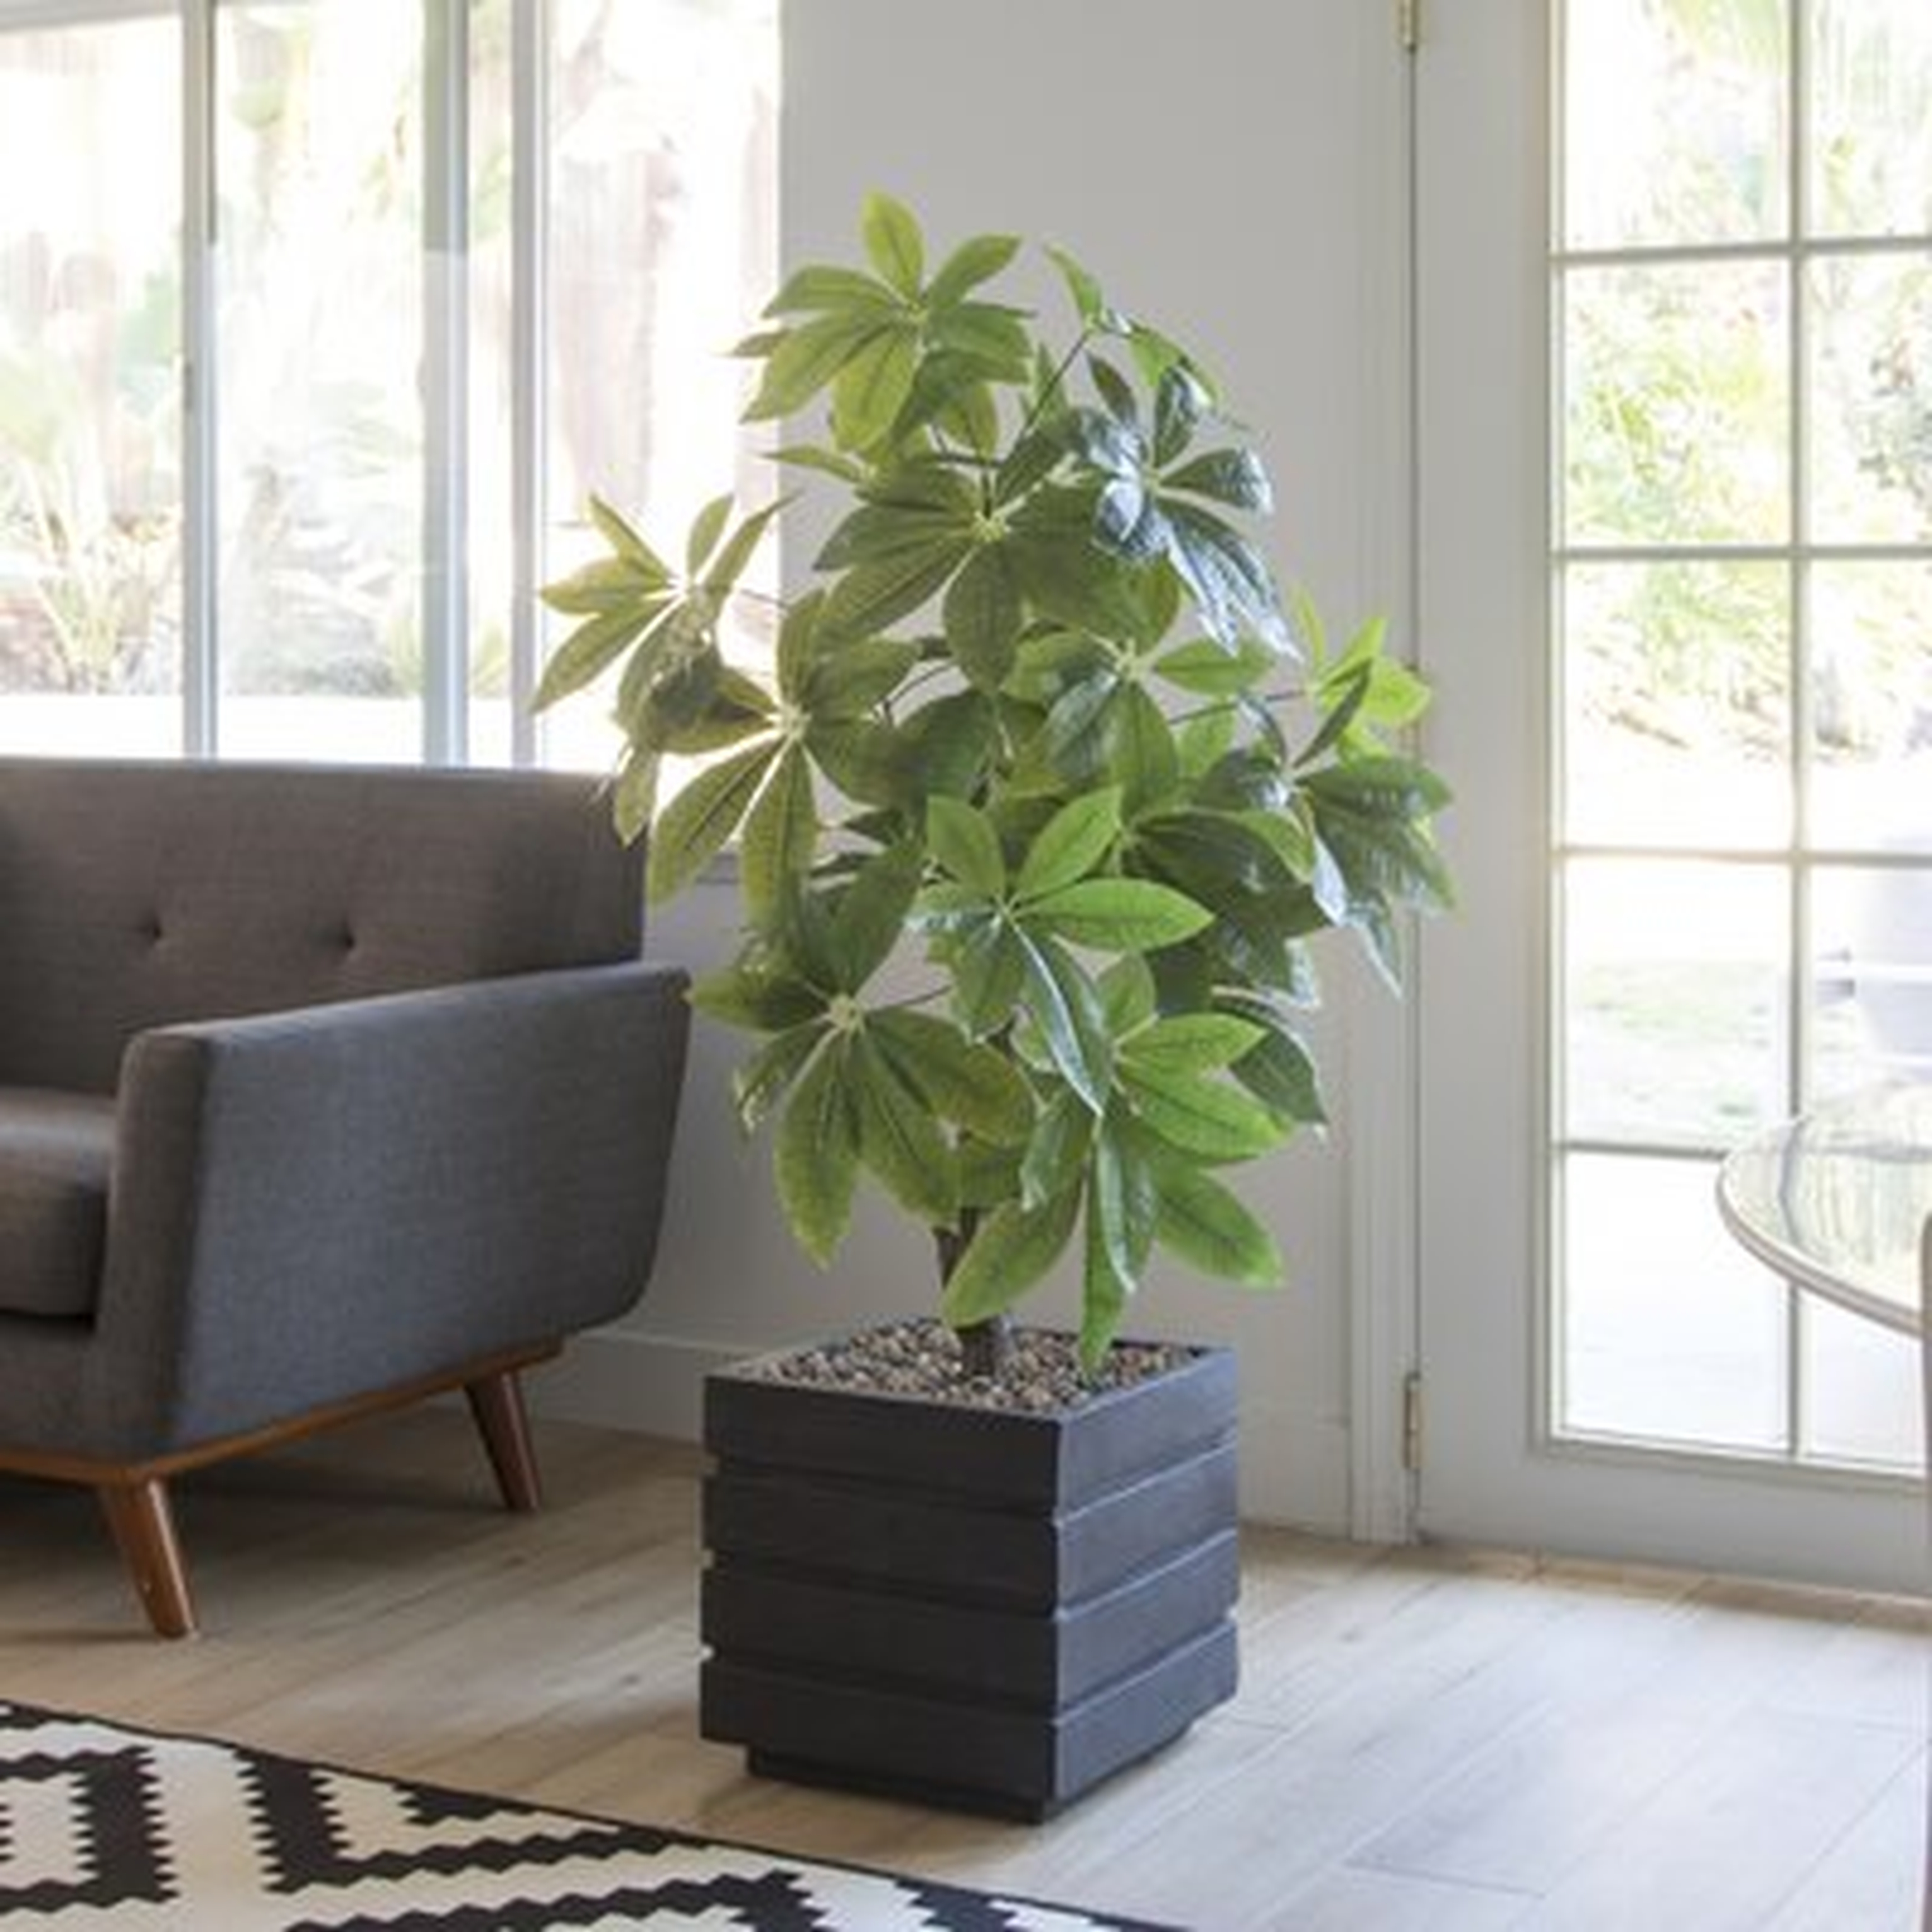 34" Real Touch Indoor/Outdoor Pachira Aquat Tree in Planter - Wayfair